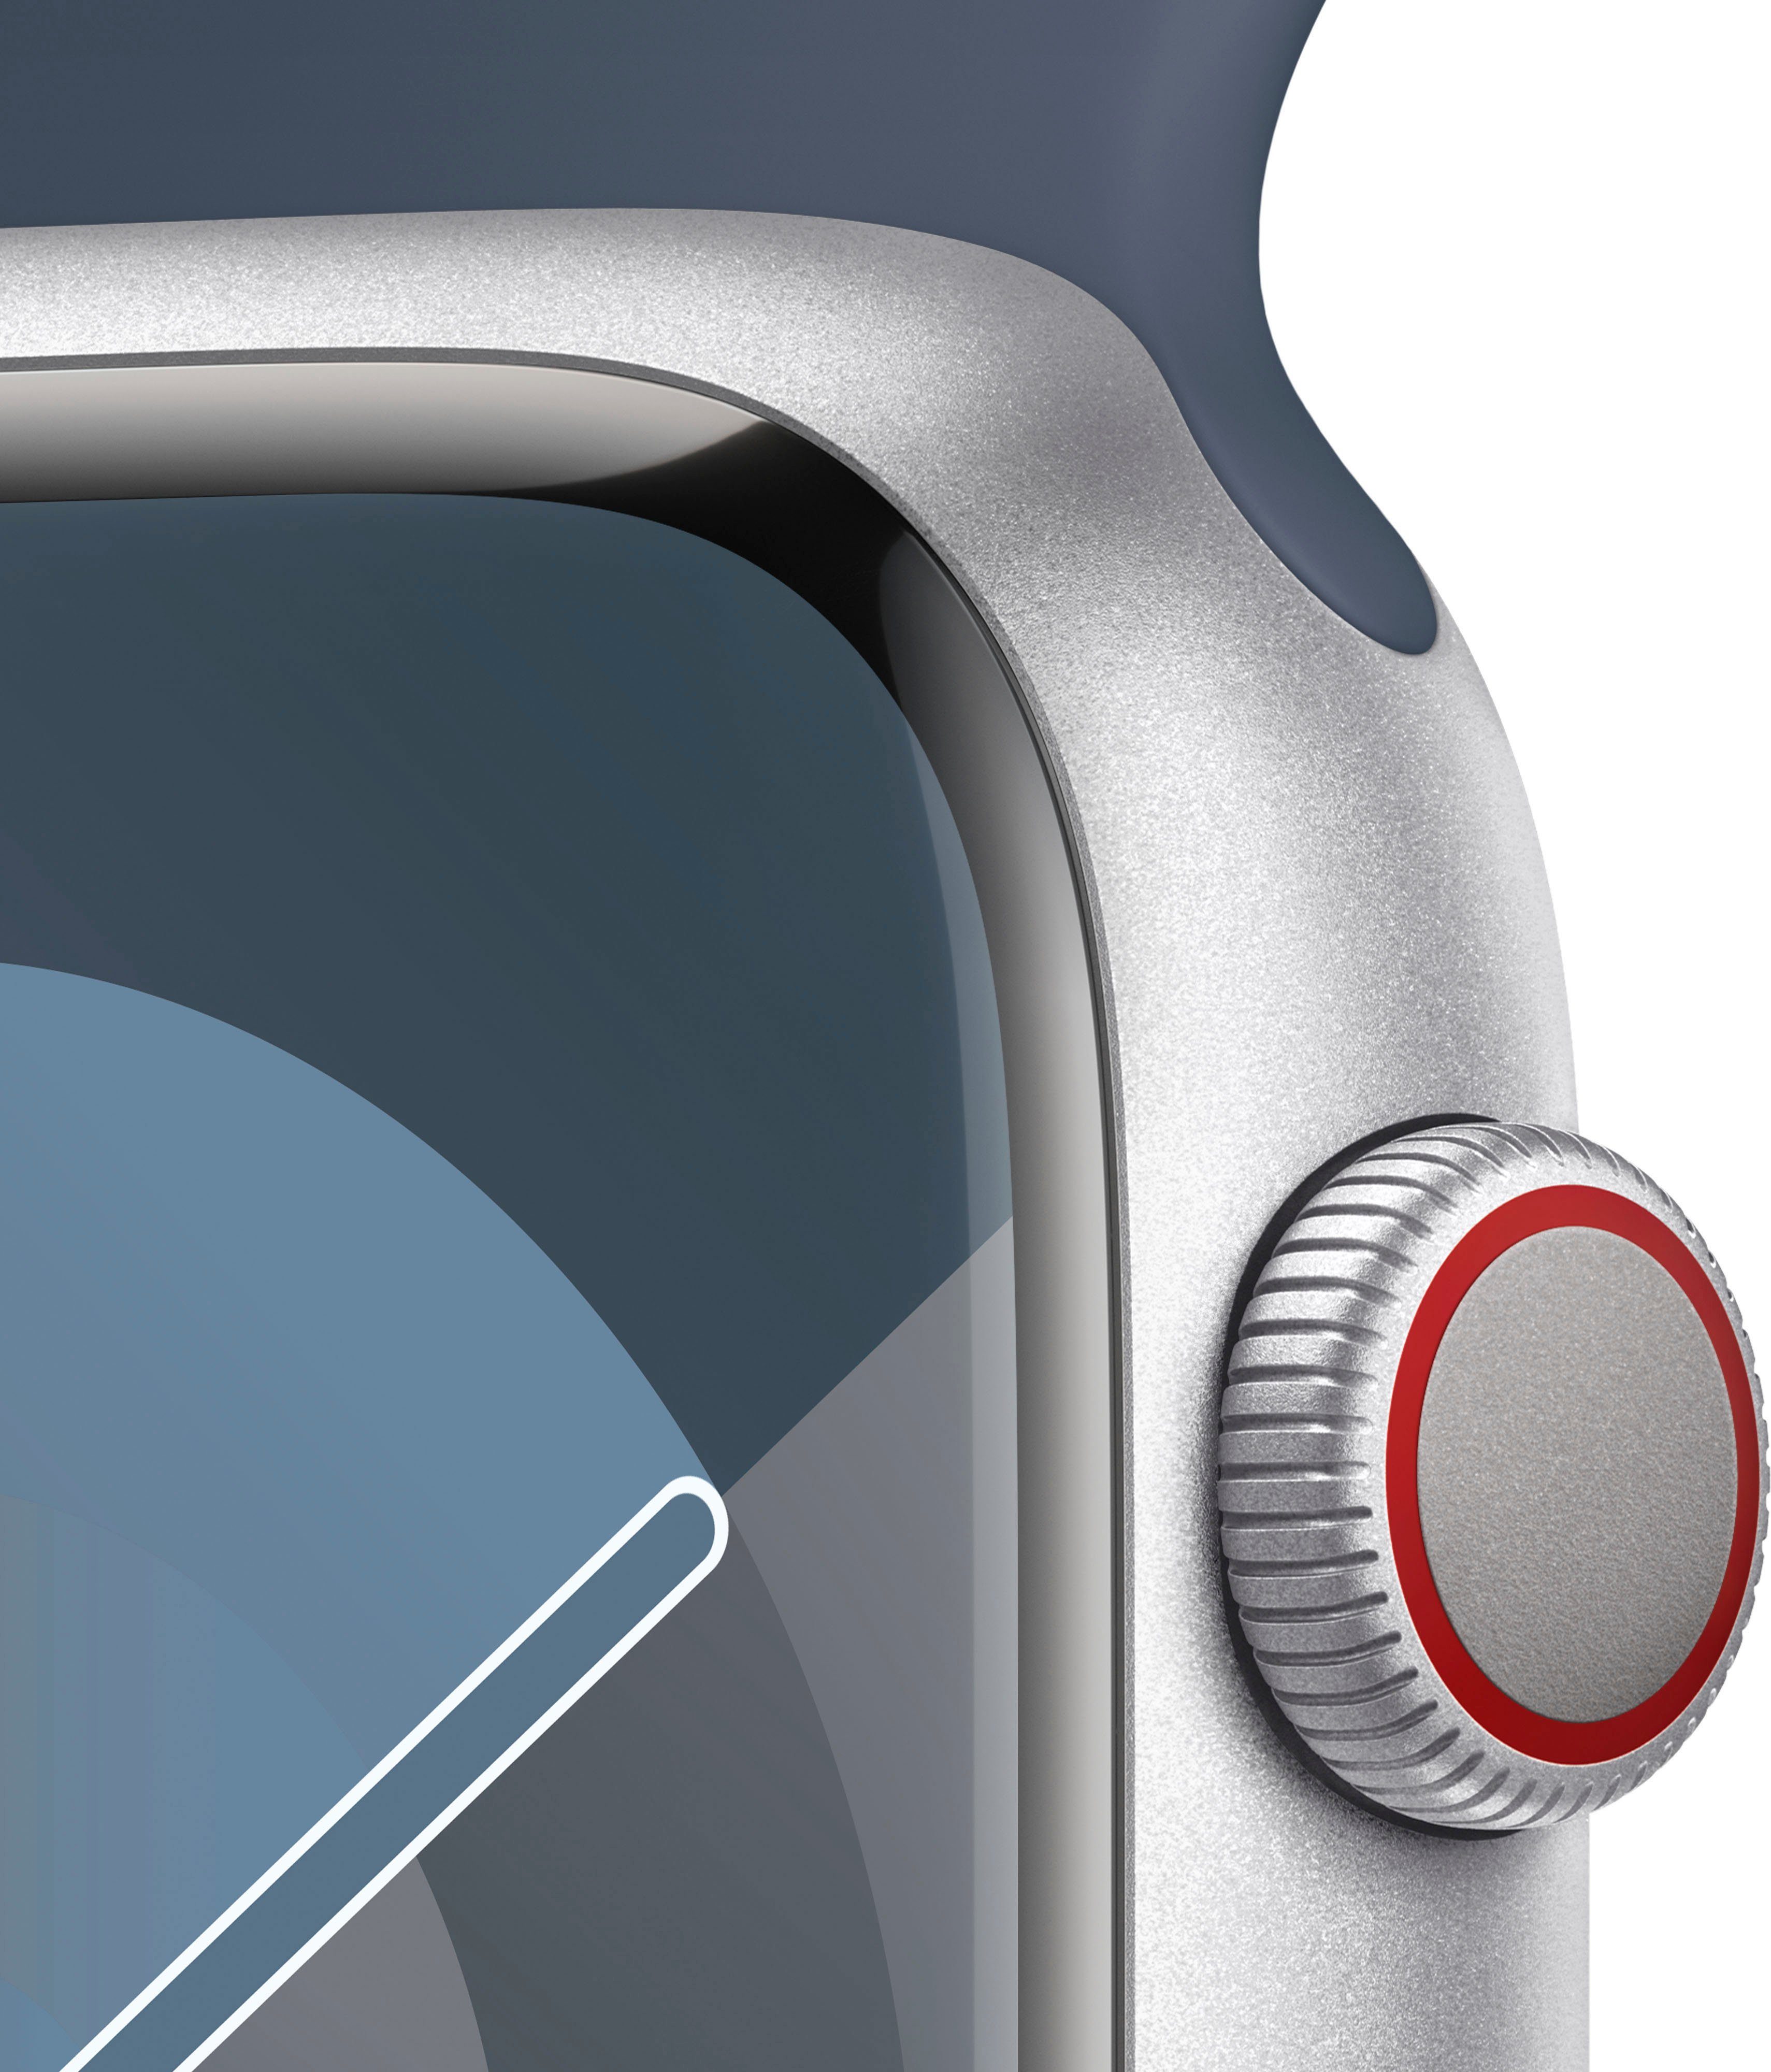 Apple Watch Silber | Watch Zoll, Band + 45mm GPS 10), (4,5 Series Cellular cm/1,77 9 Sport Sturmblau Smartwatch Aluminium OS